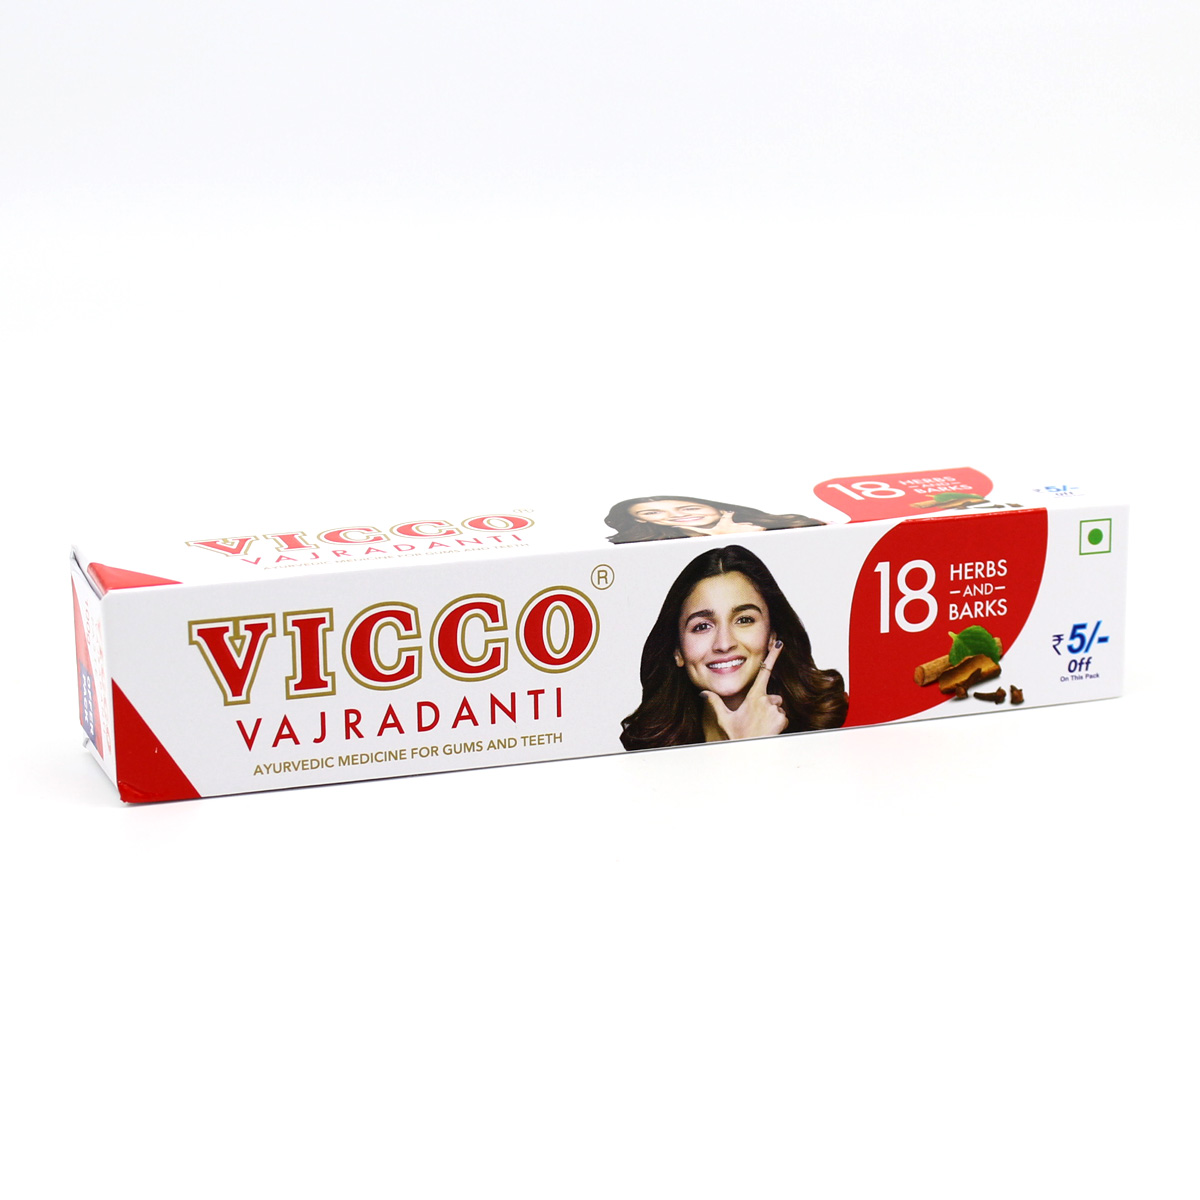 VICCO Vajradanti (Викко Ваджраданти, Аюрведическая зубная паста для зубов и десен), 100 г.